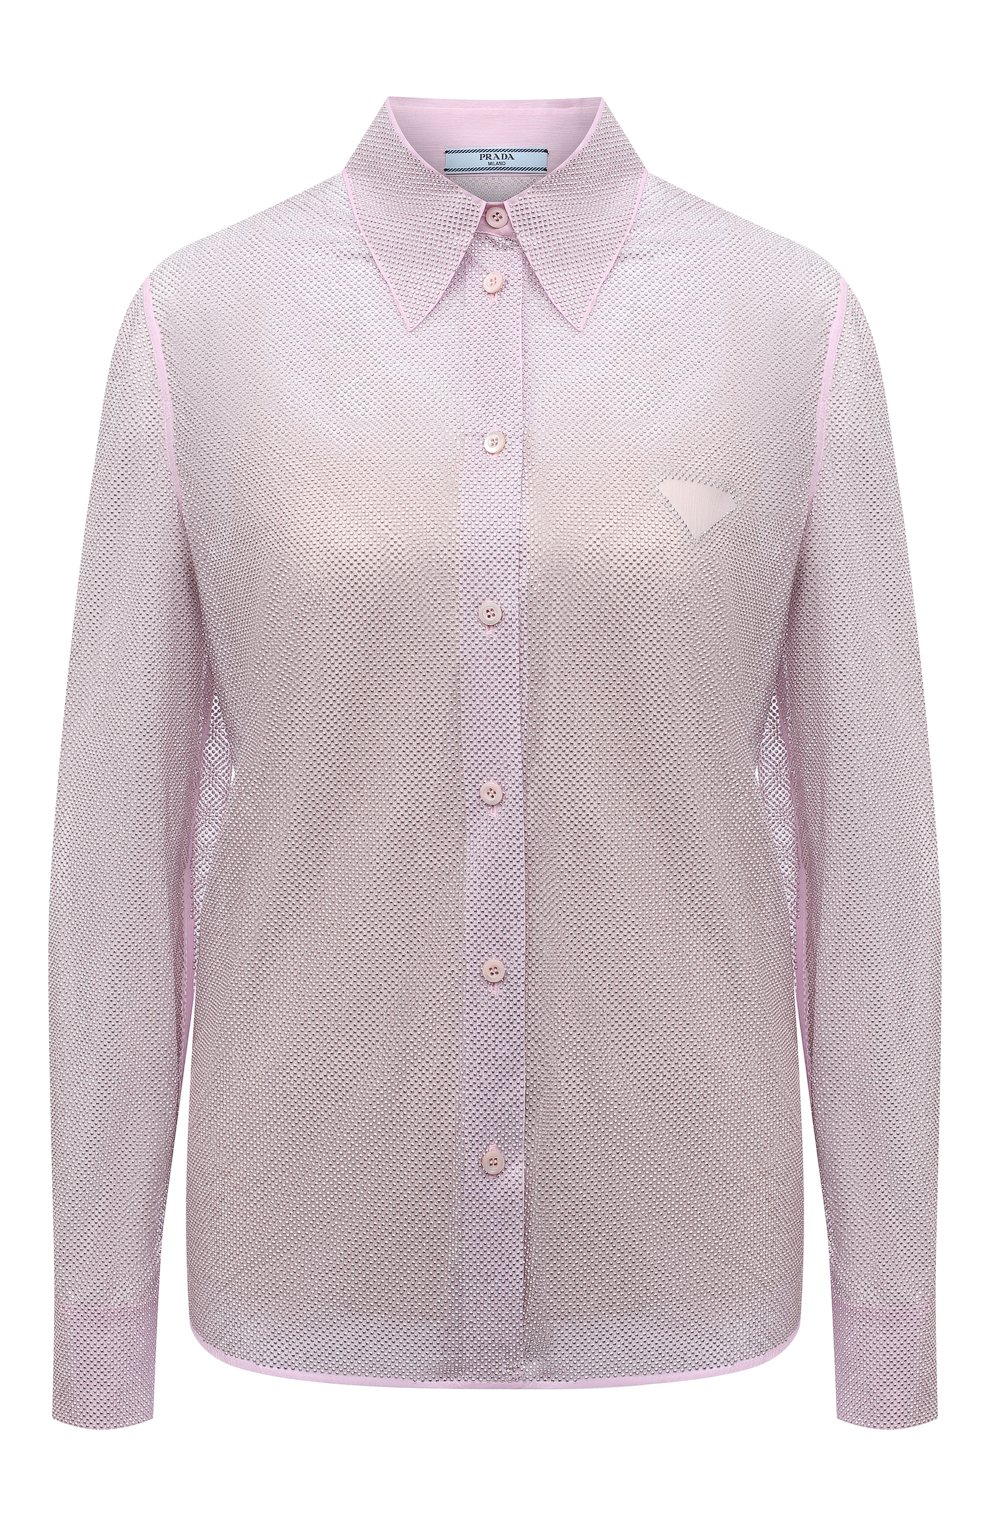 Шелковая блузка с отделкой стразами Prada